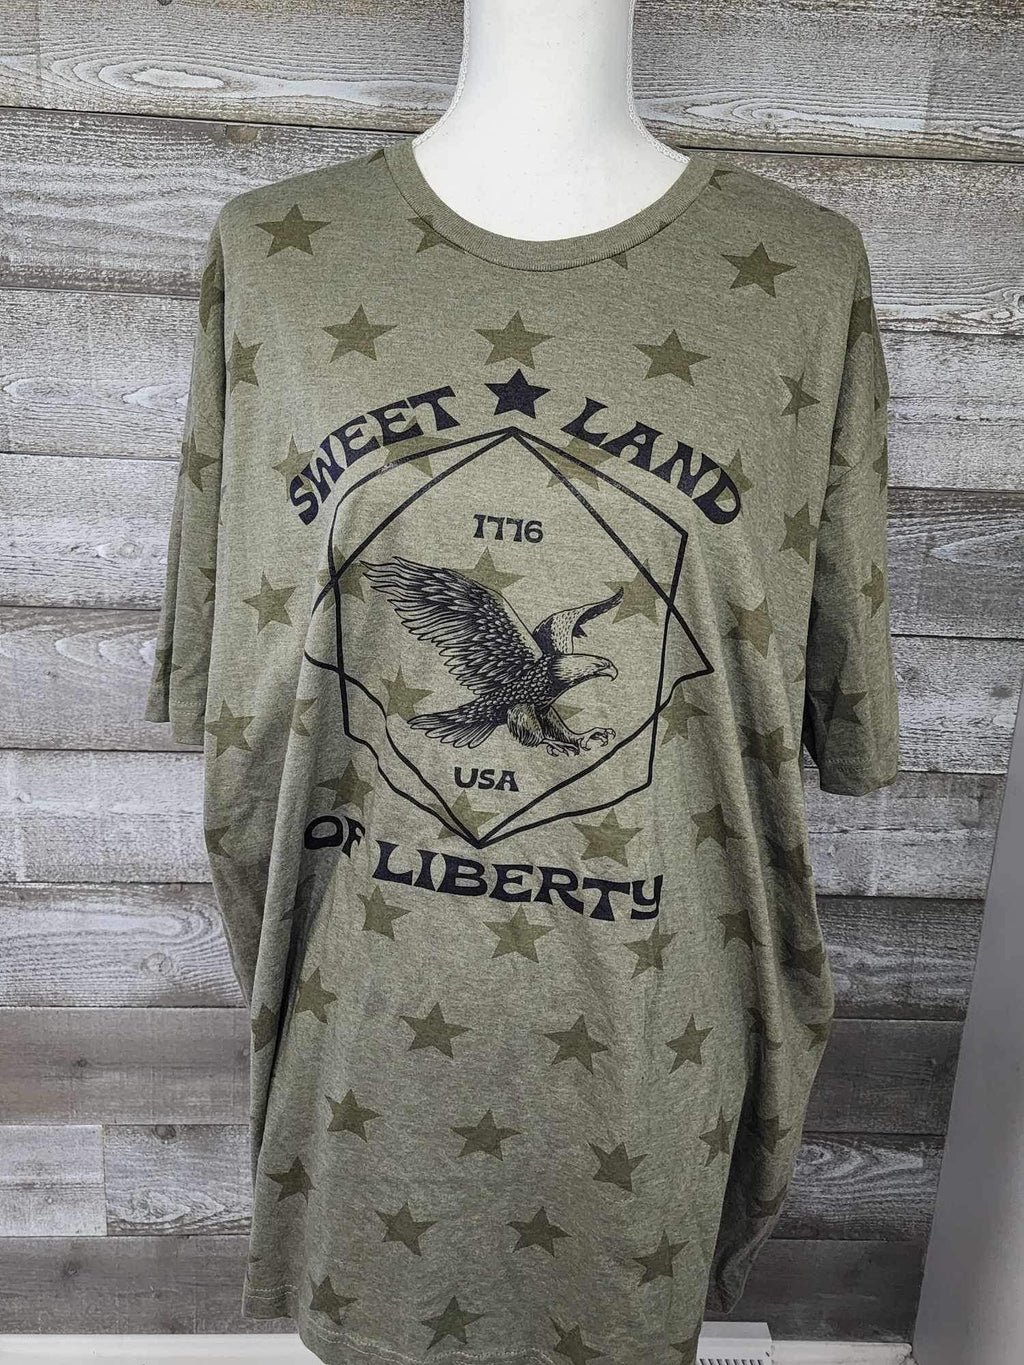 Sweet Land Of Liberty Tee